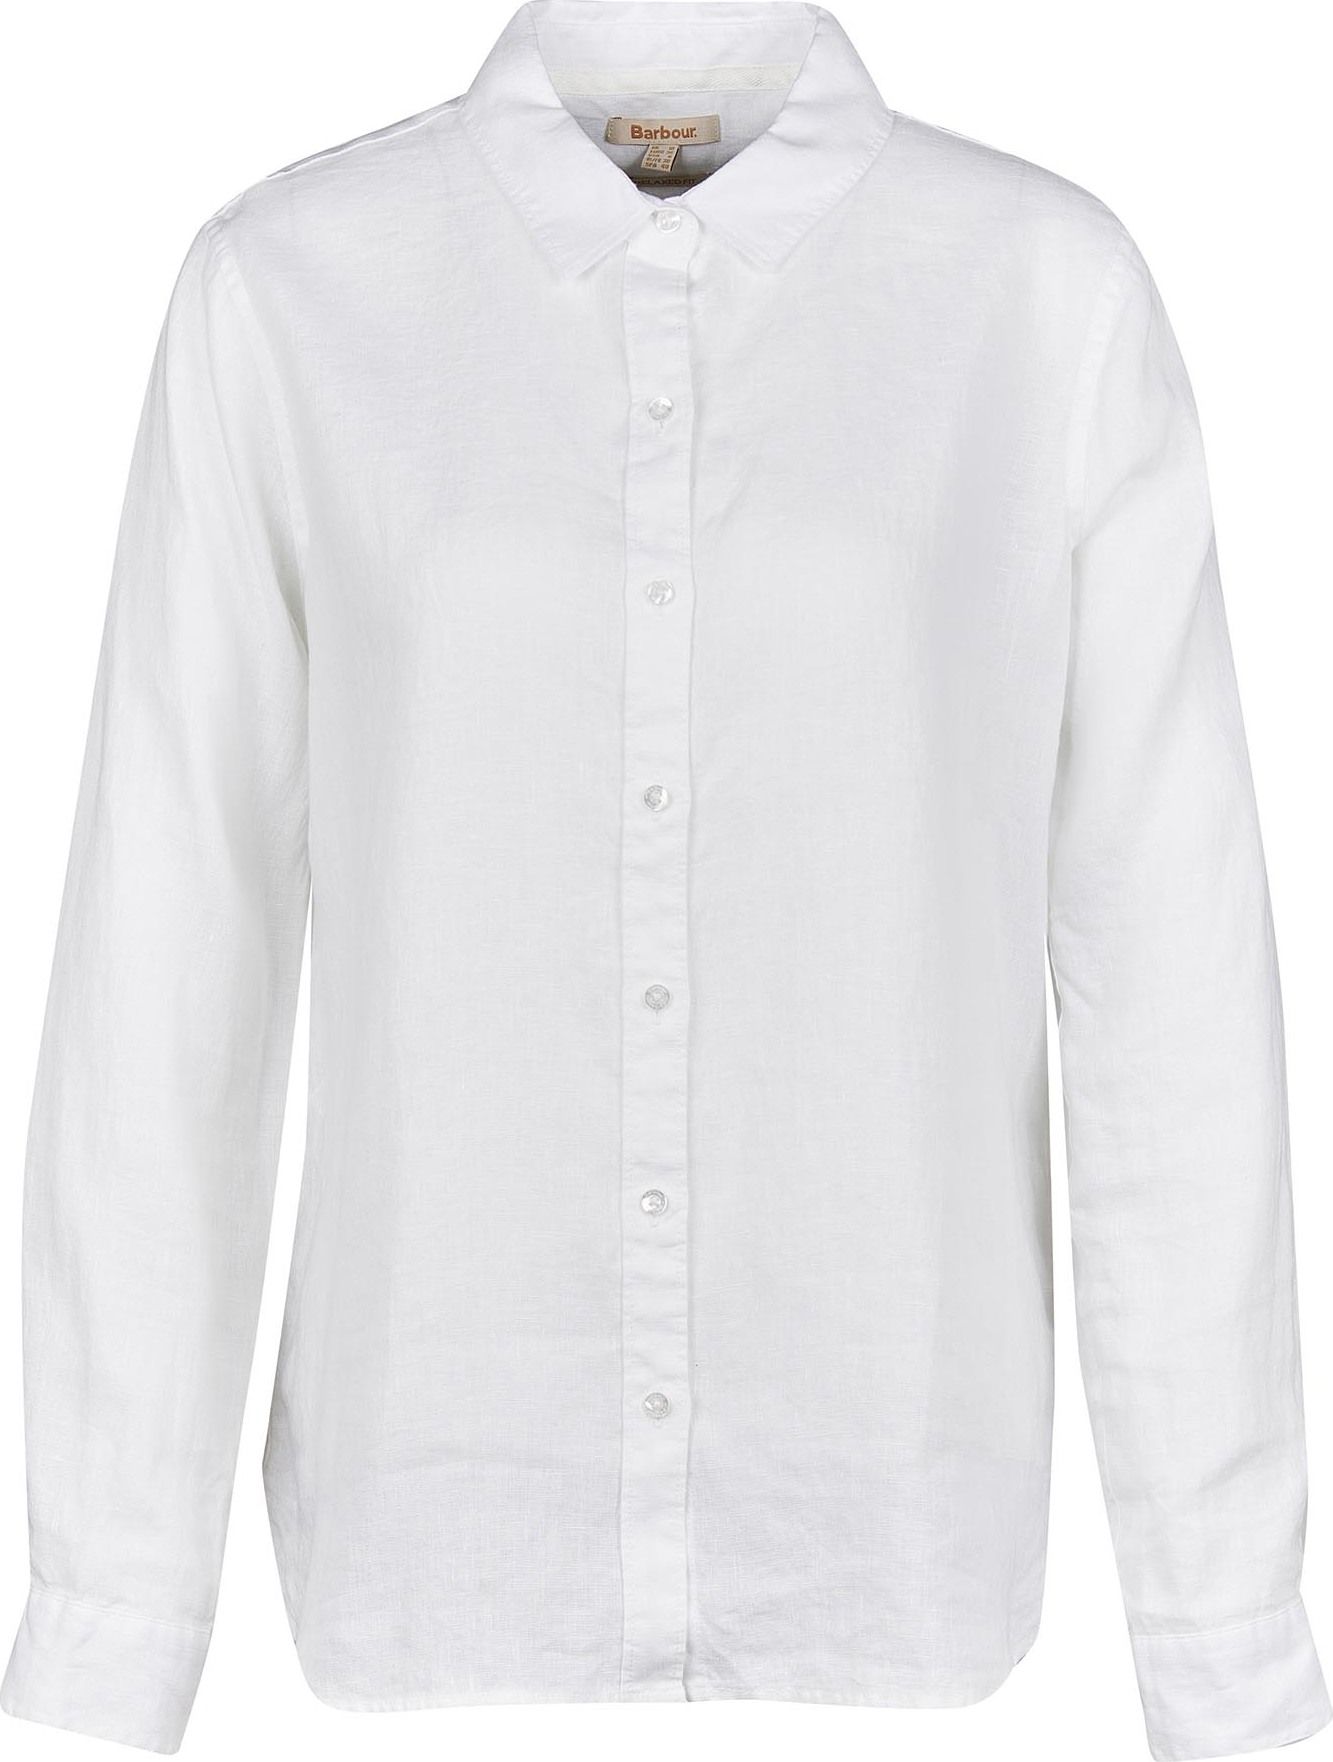 Women's Marine Shirt White